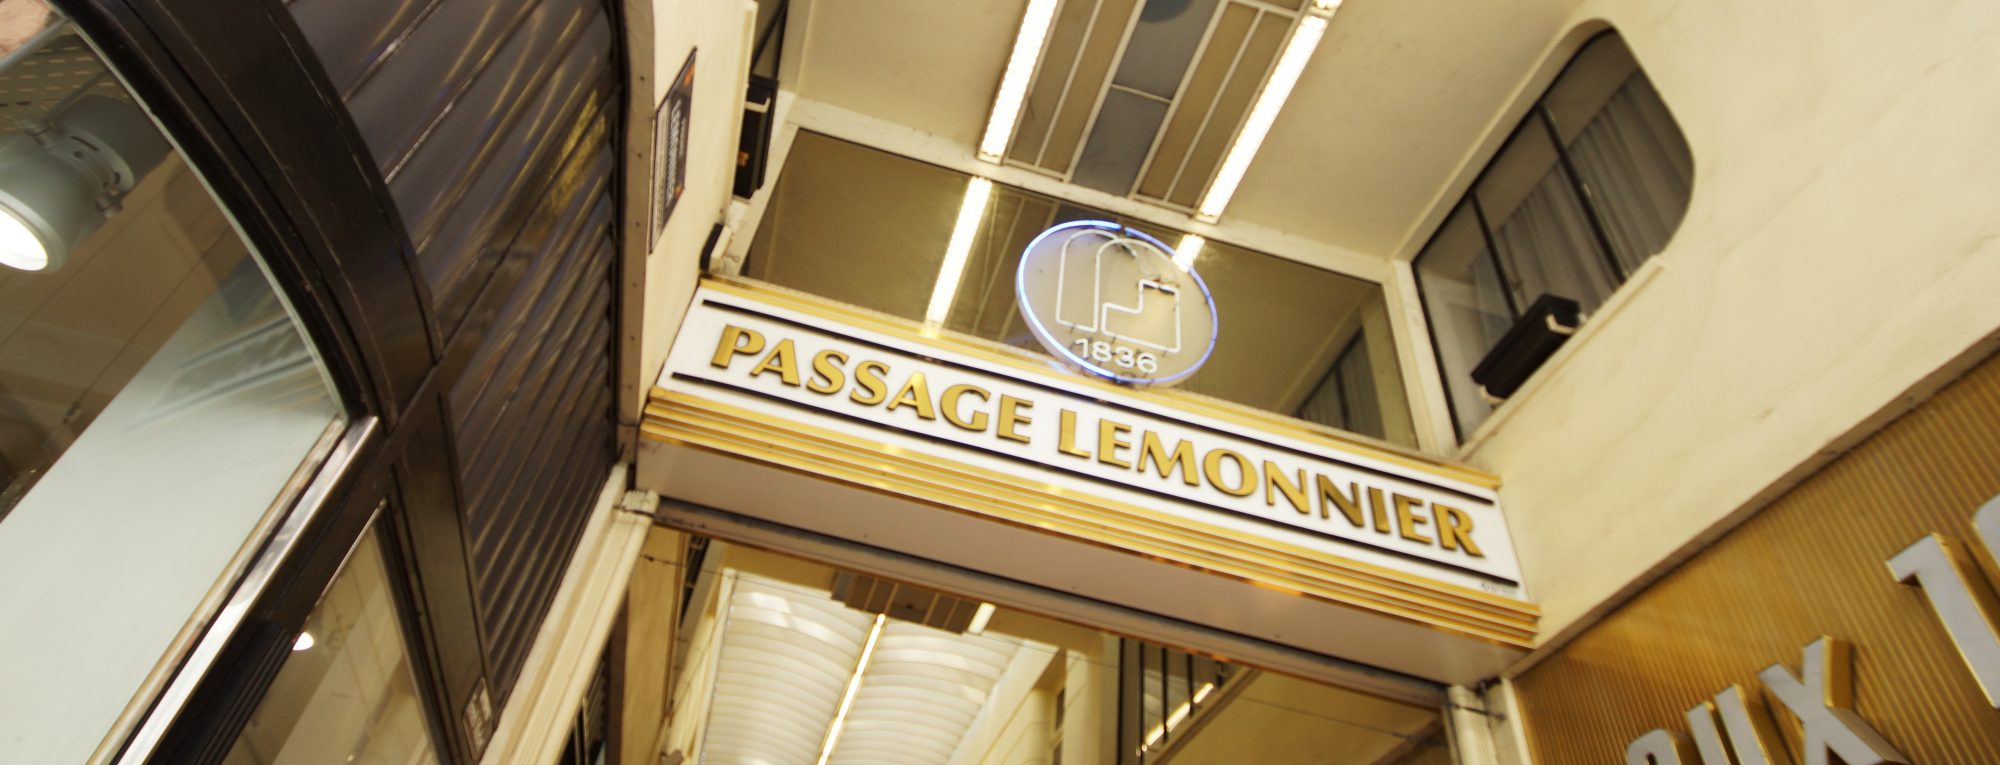 Passage Lemonnier